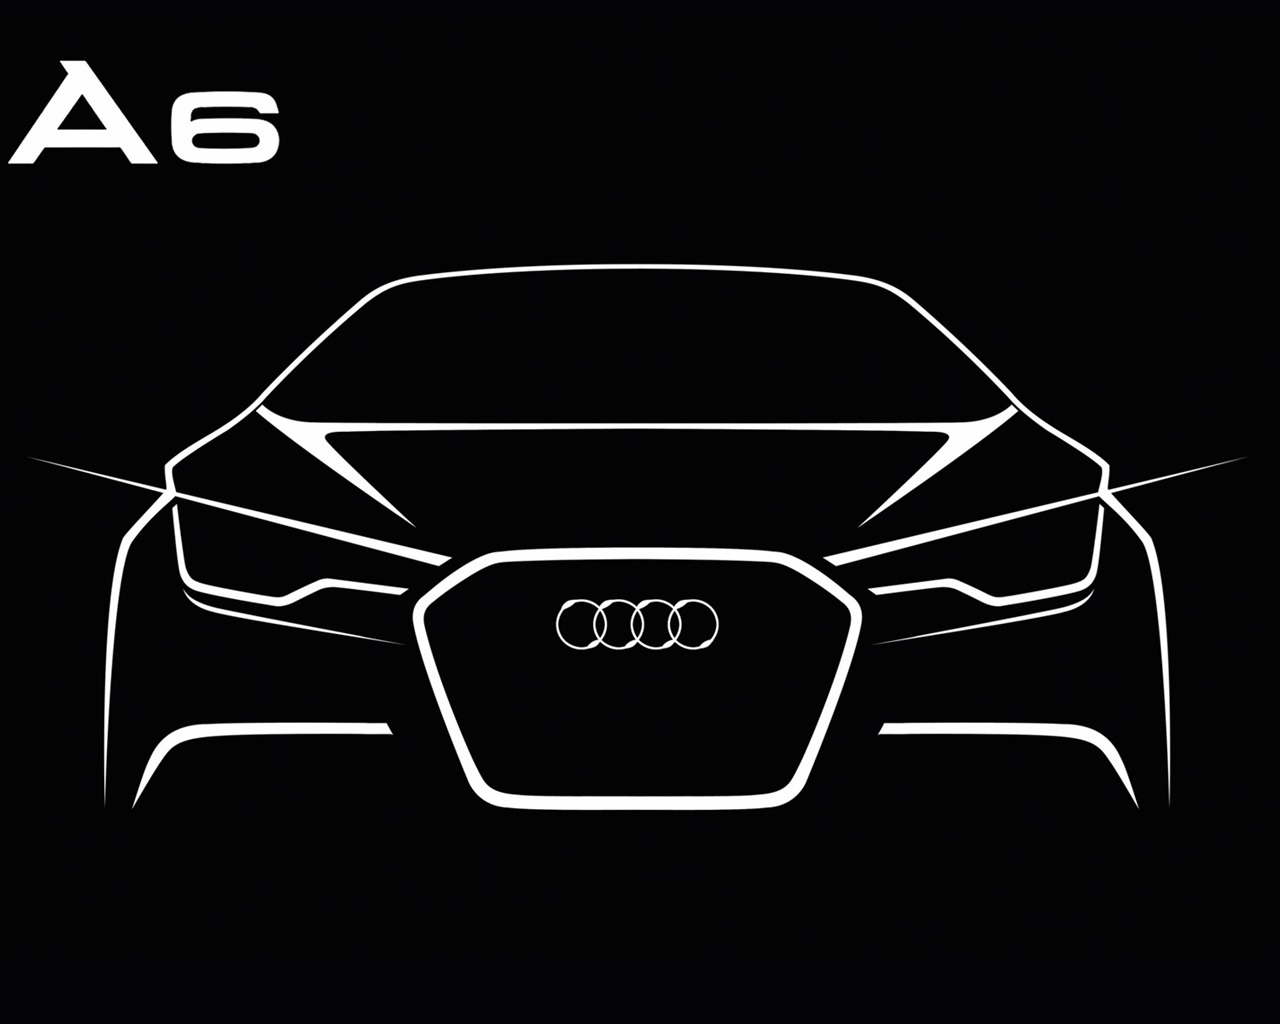 Audi A6 3.0 TDI quattro - 2011 奥迪28 - 1280x1024